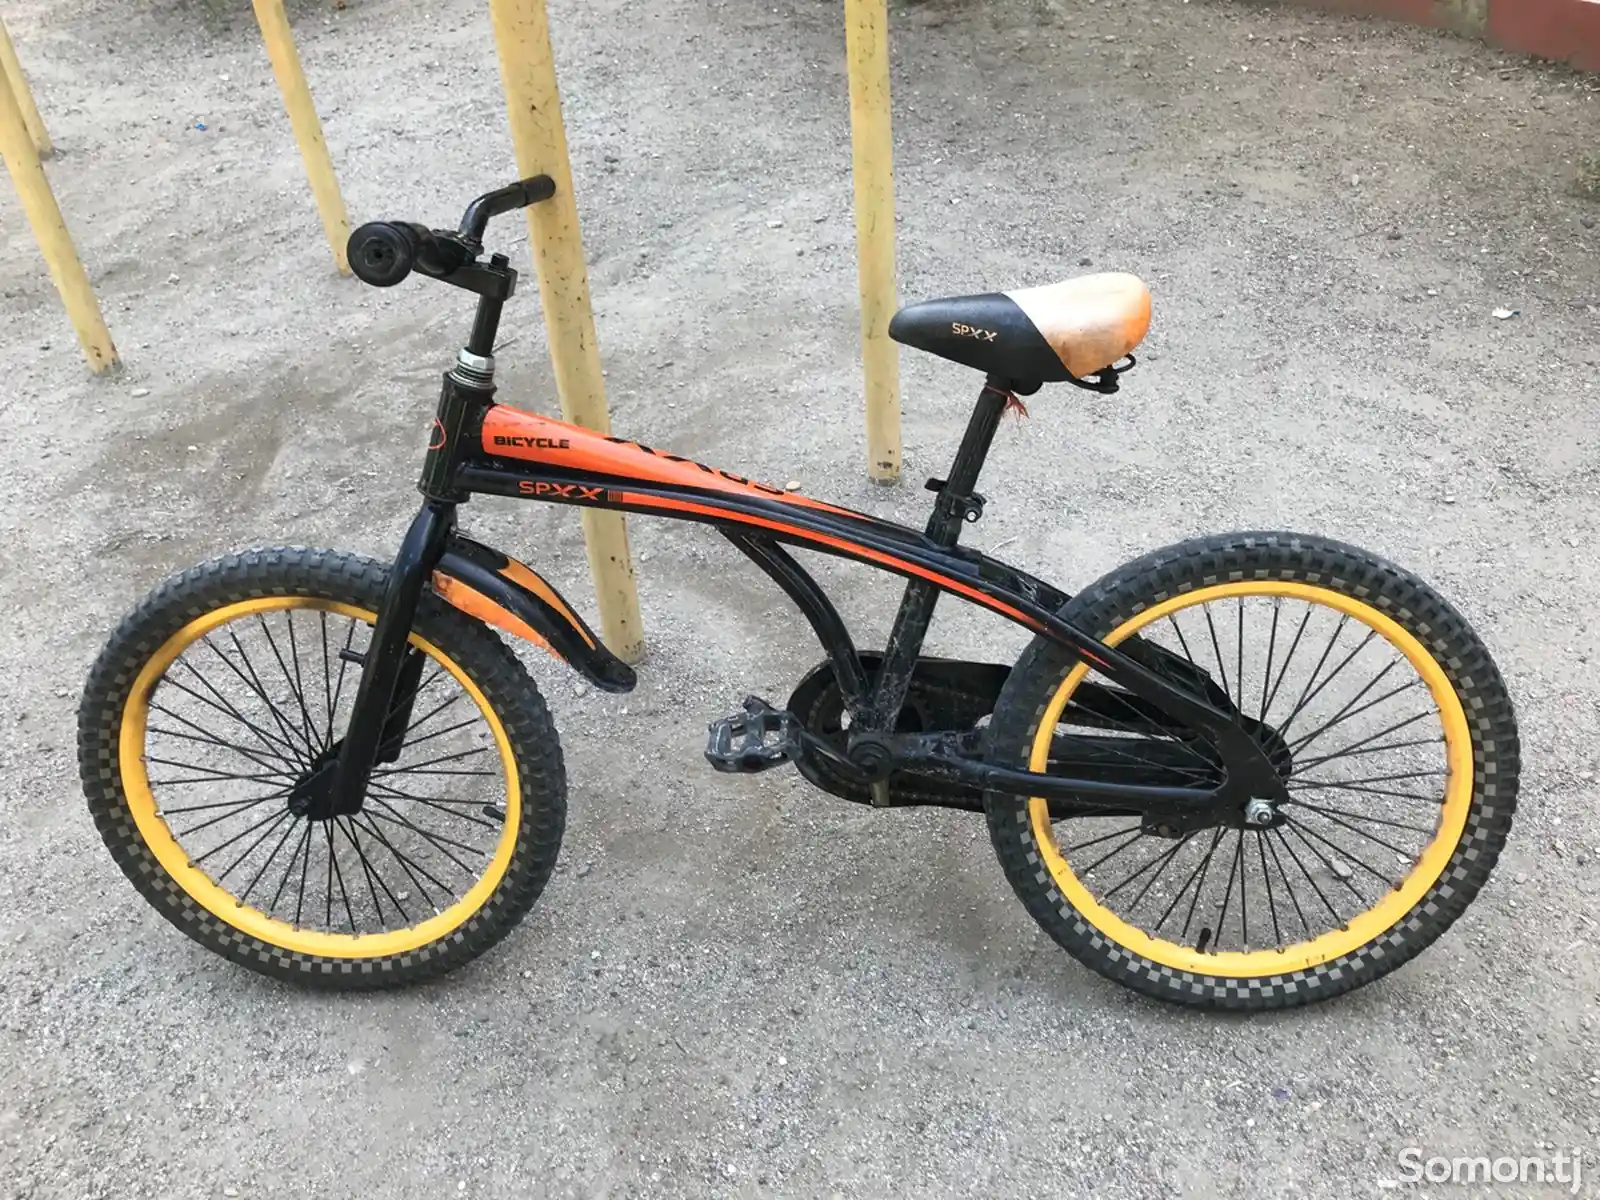 Велосипед Spxx-3